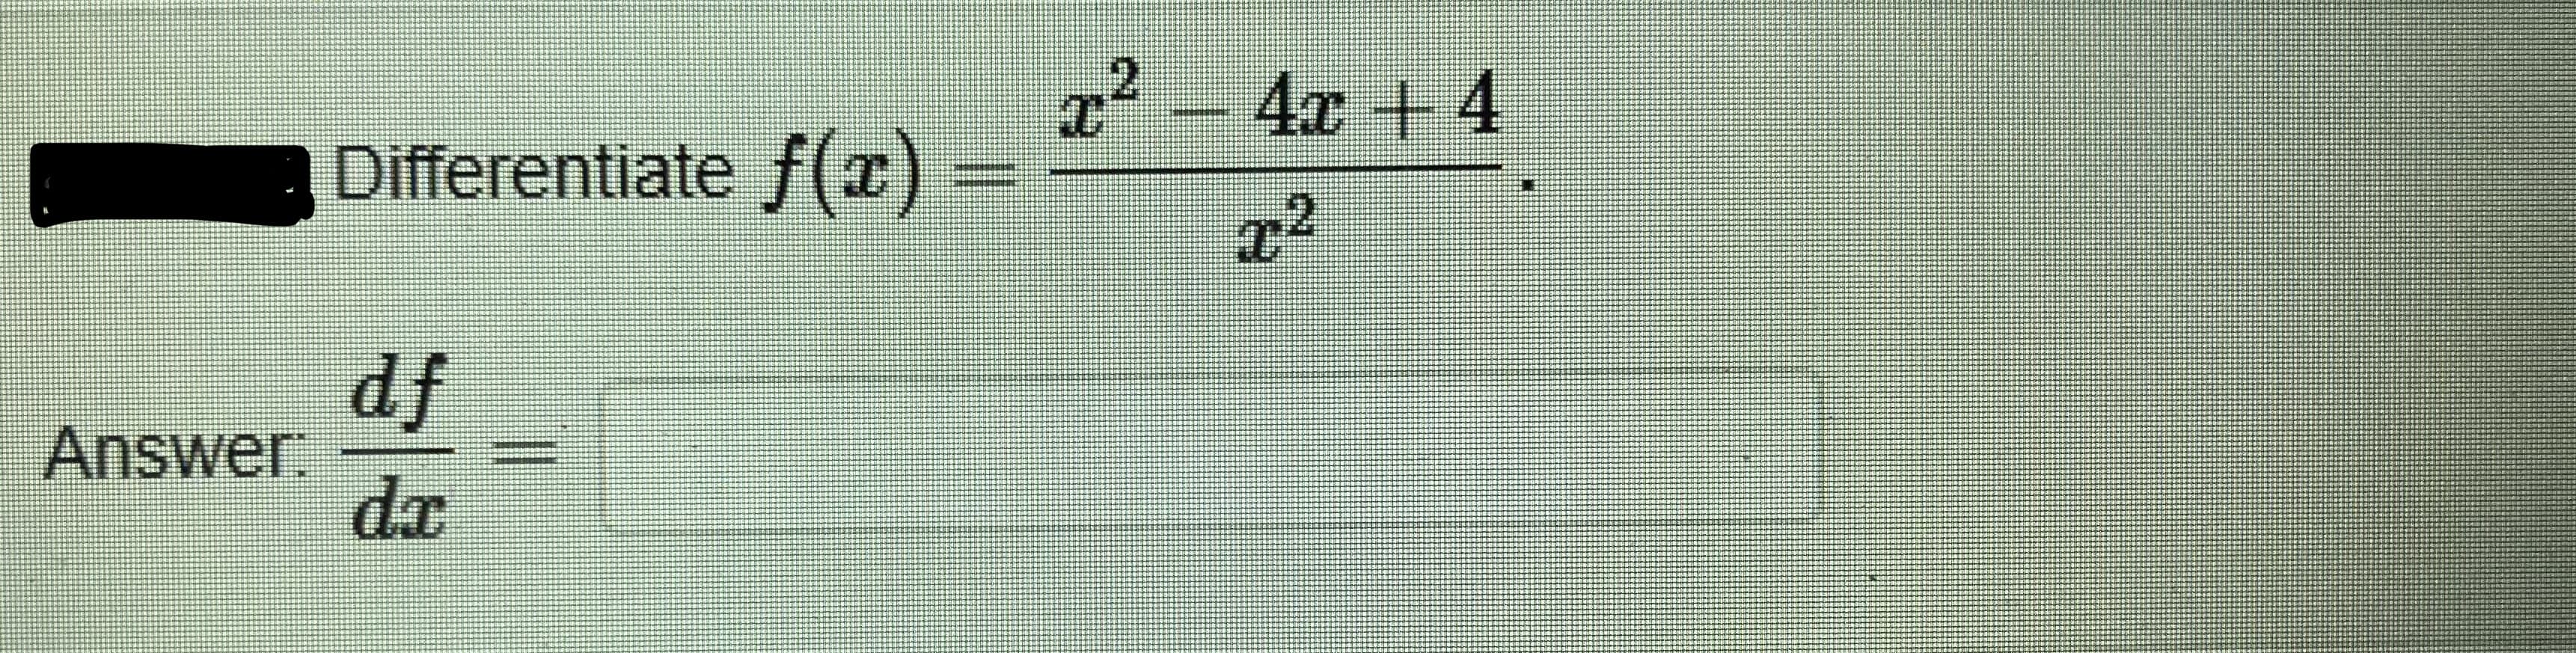 z² – 4x + 4
Differentiate f(x)
